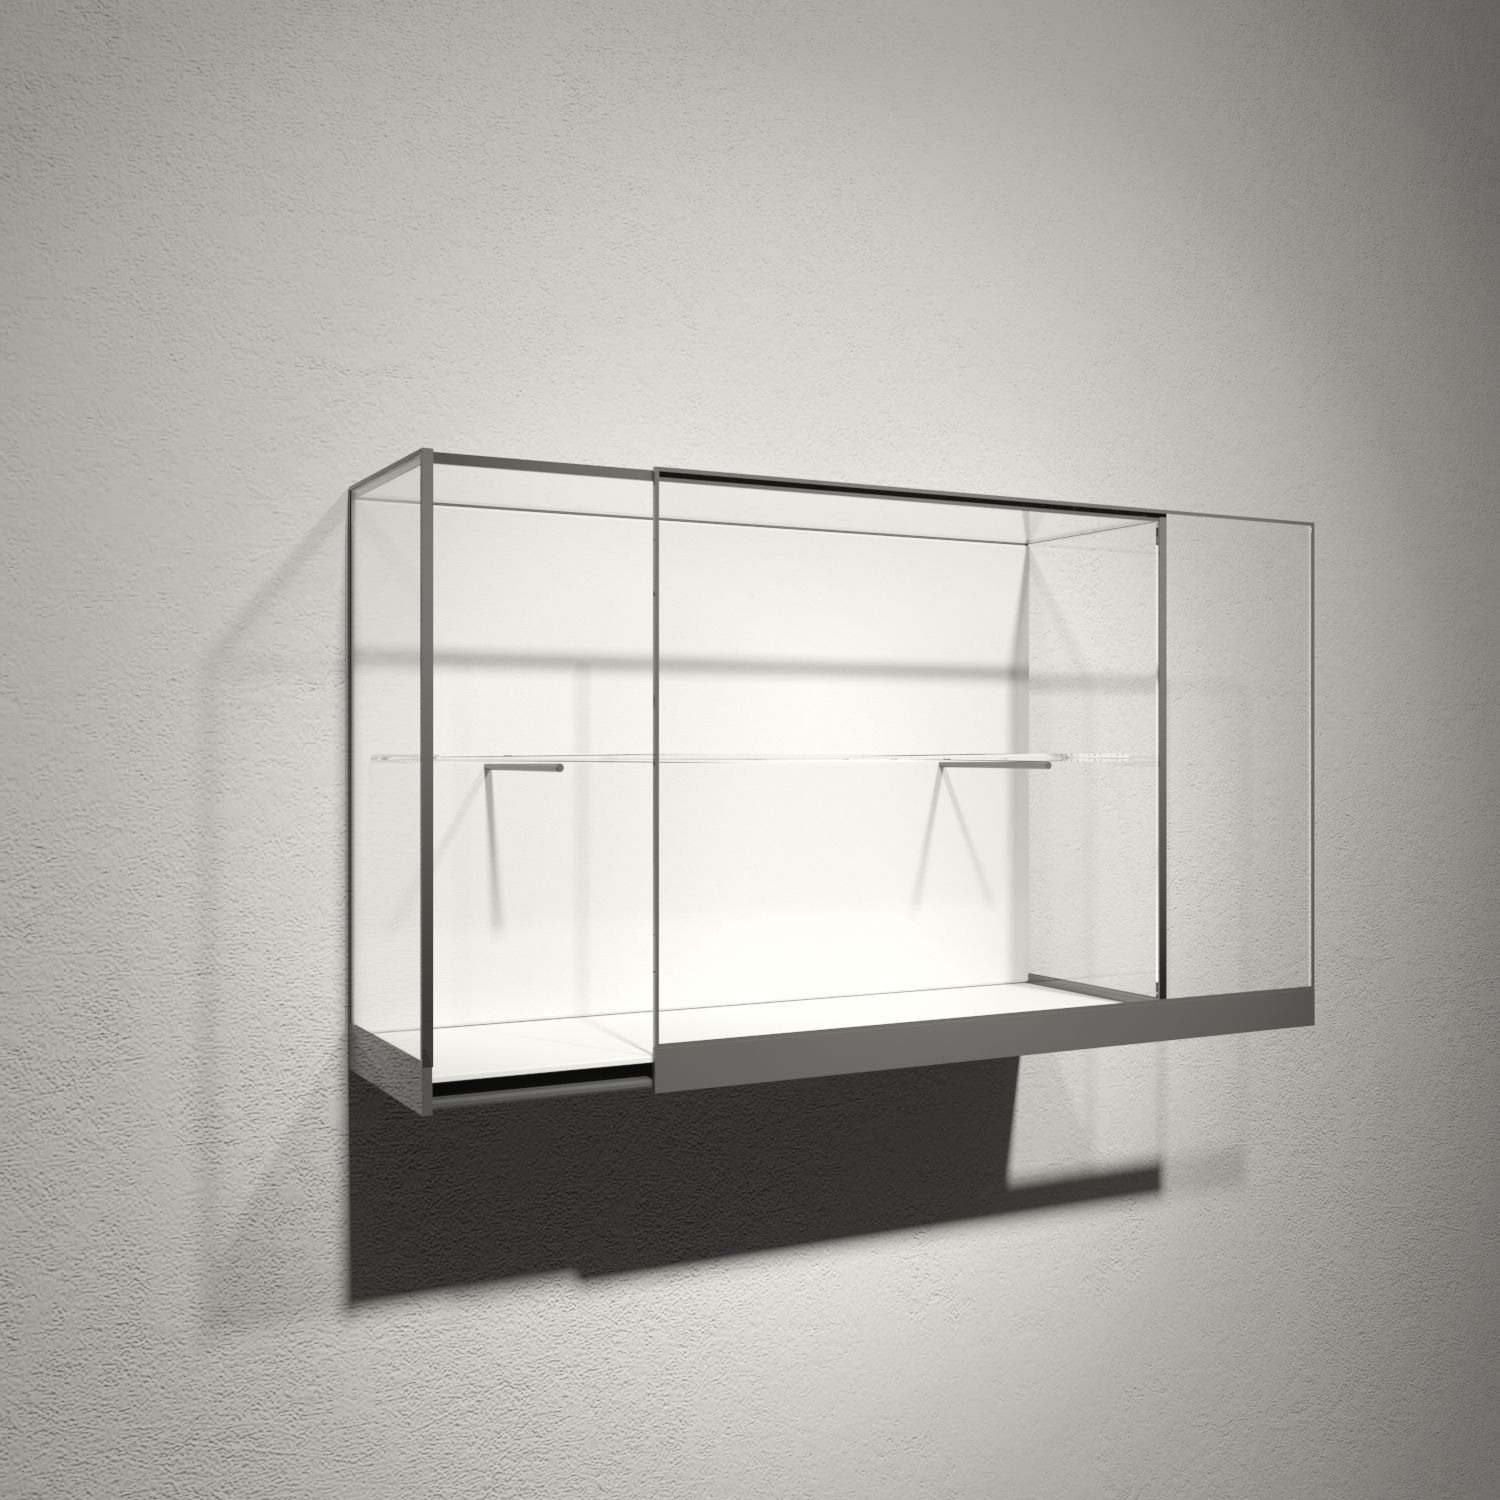 мебель для музея витрины